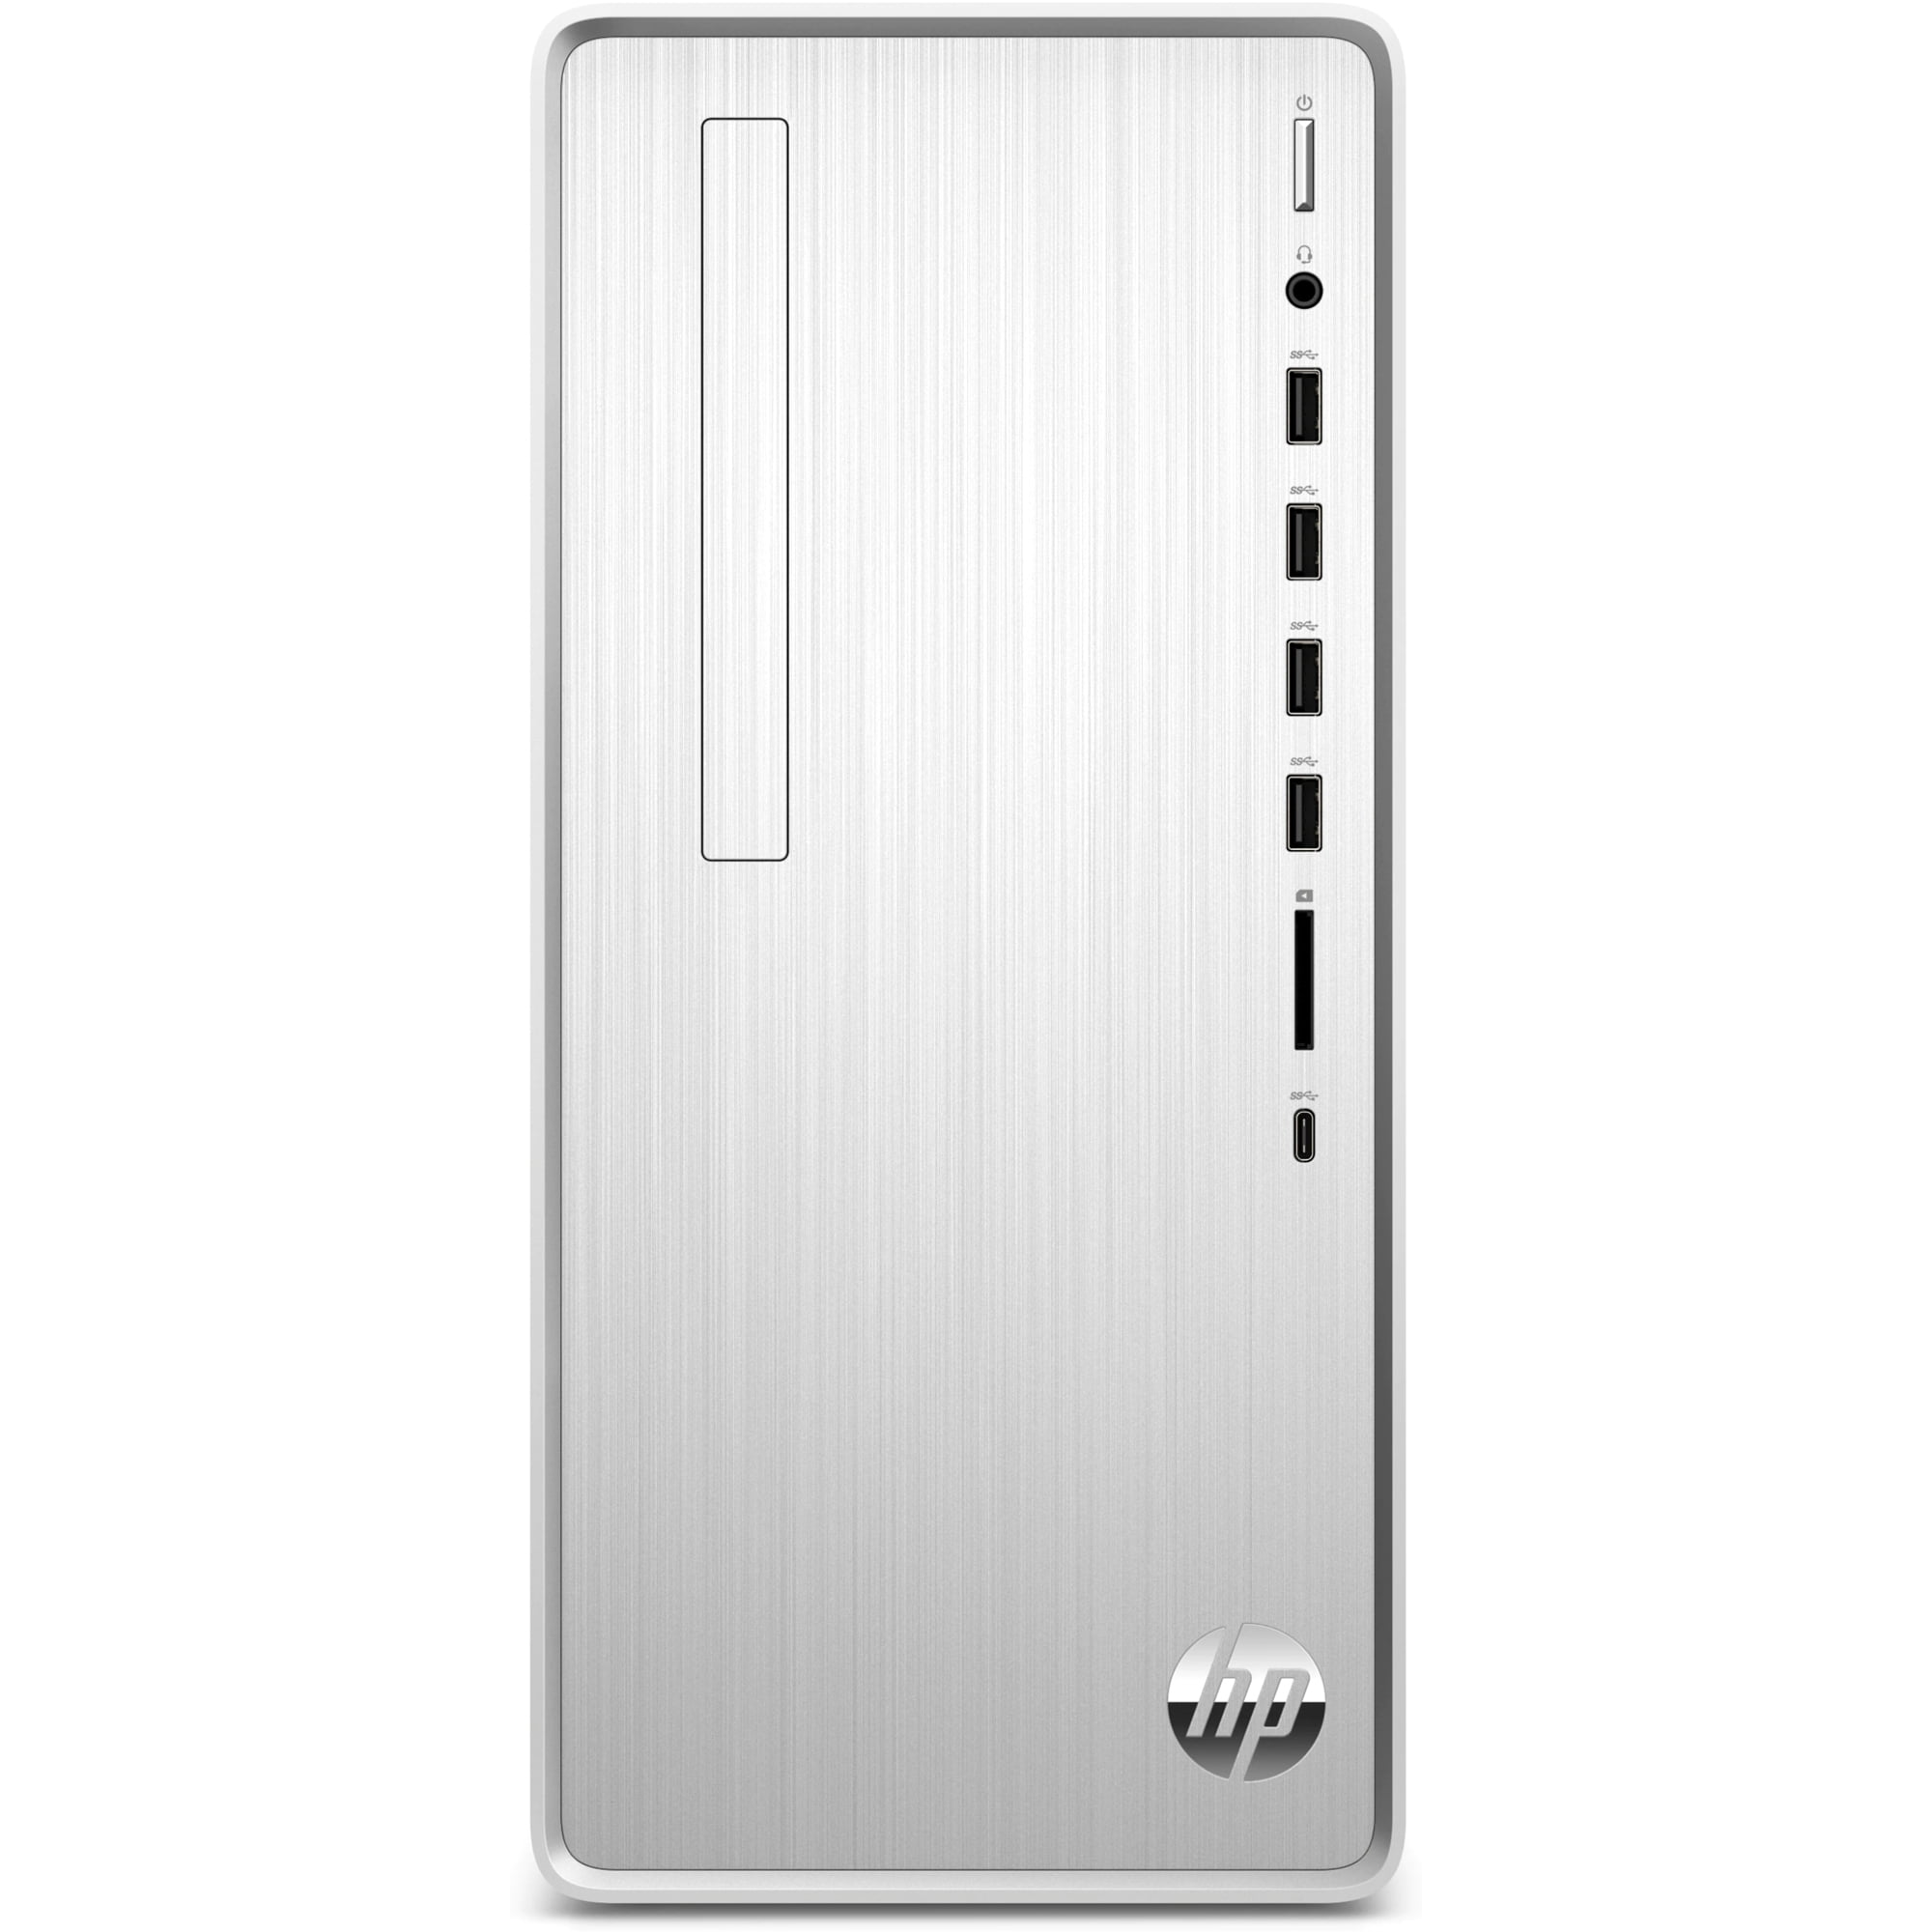 極細繊維クロス エイチピー HP Pavilion TP01 Desktop Computer - 12th